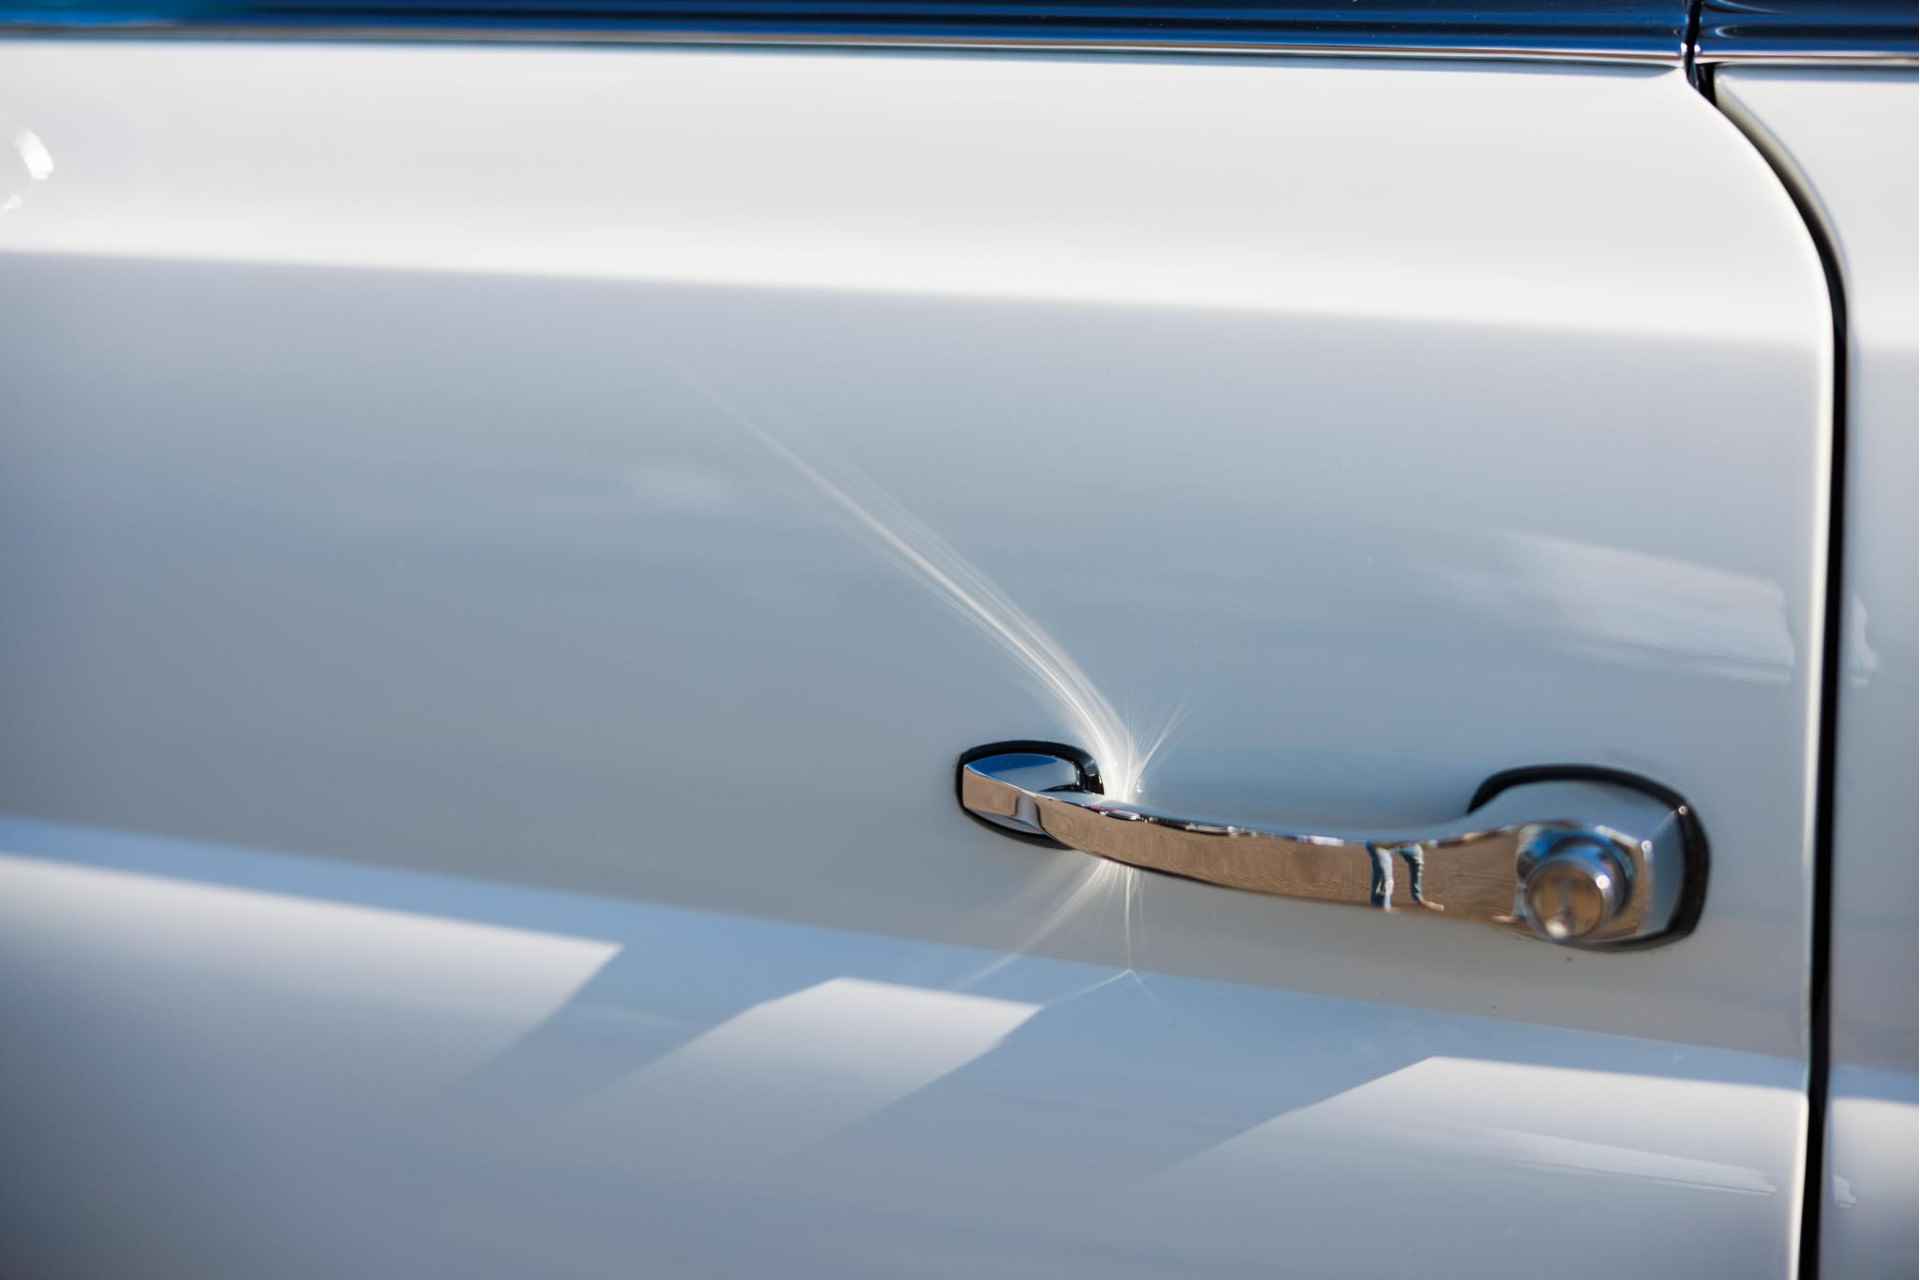 Mercedes-Benz W111 280 SE Cabriolet Volledig gerestaureerd  Verkoop in opdracht | Flachkühler | Compleet gerestaureerd - 18/31